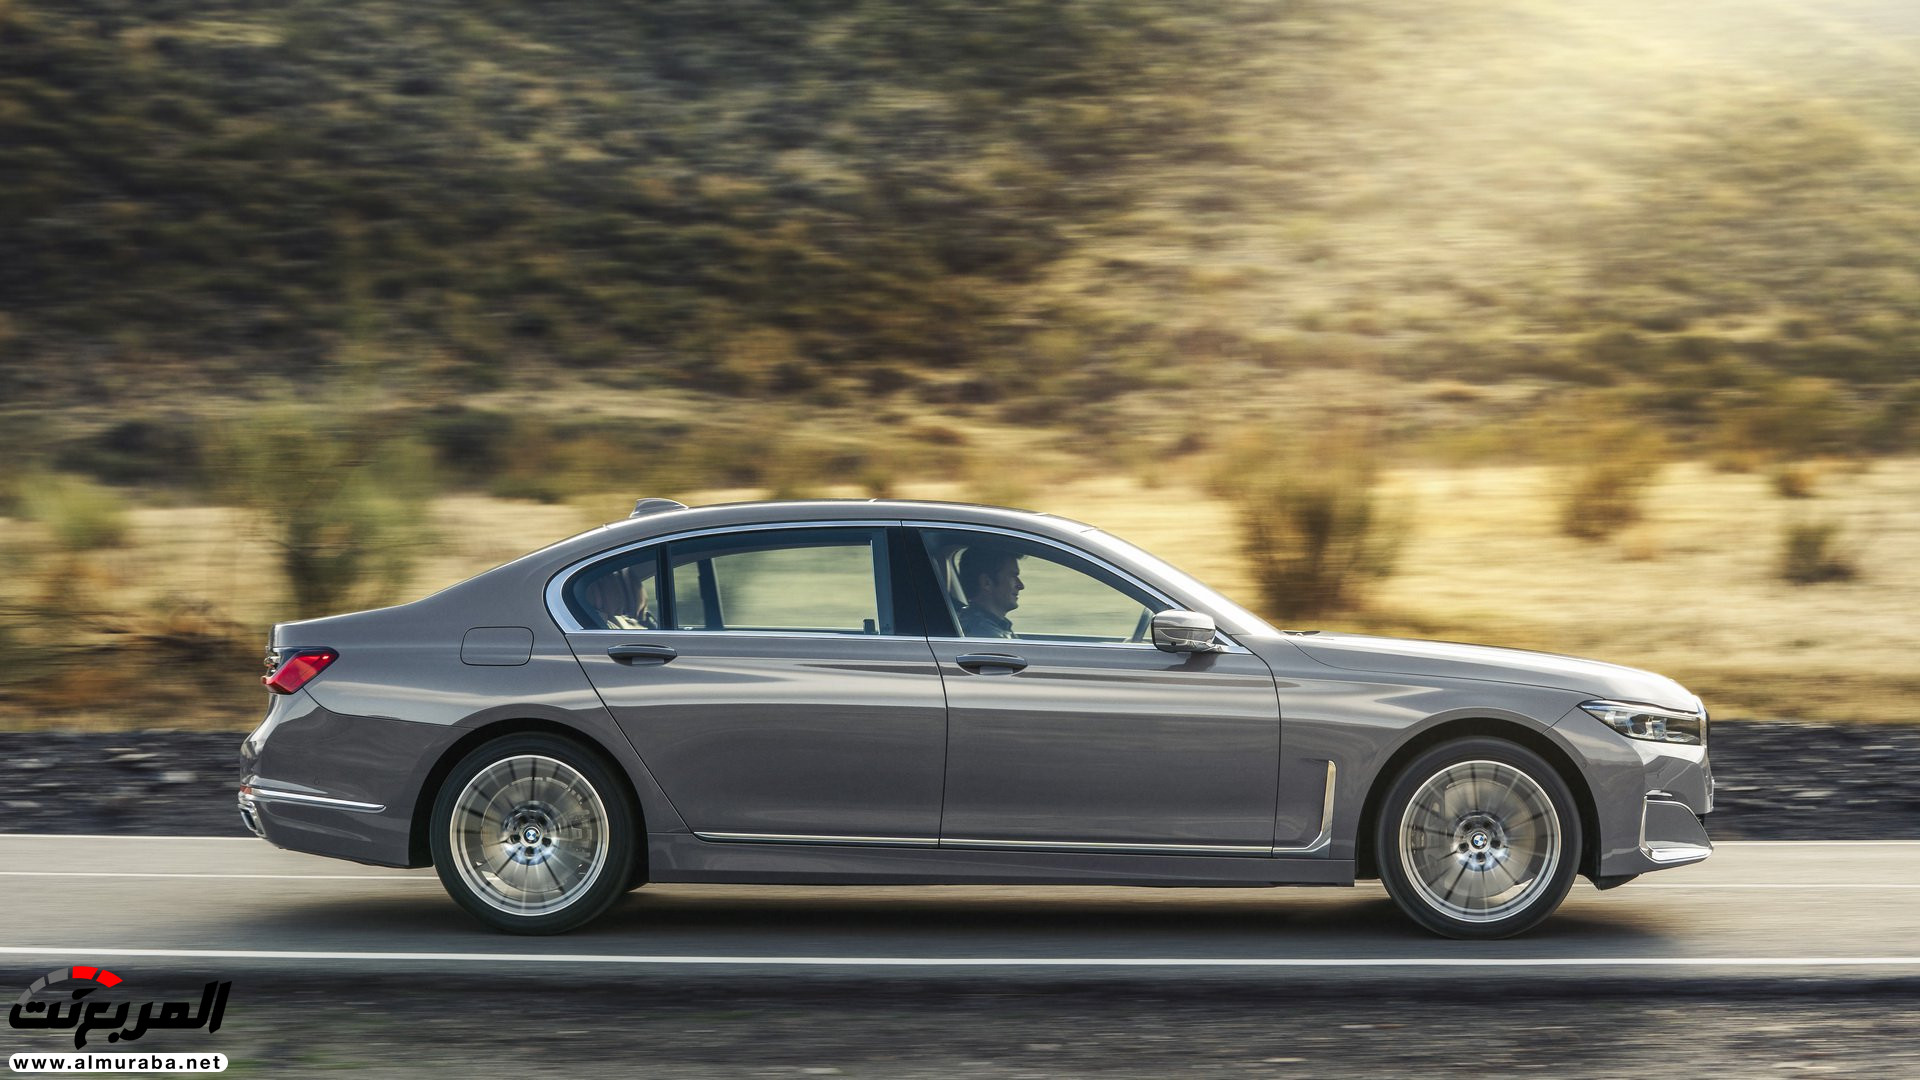 بي ام دبليو الفئة السابعة 2020 المحدثة تكشف نفسها رسمياً "صور ومواصفات" BMW 7 Series 240